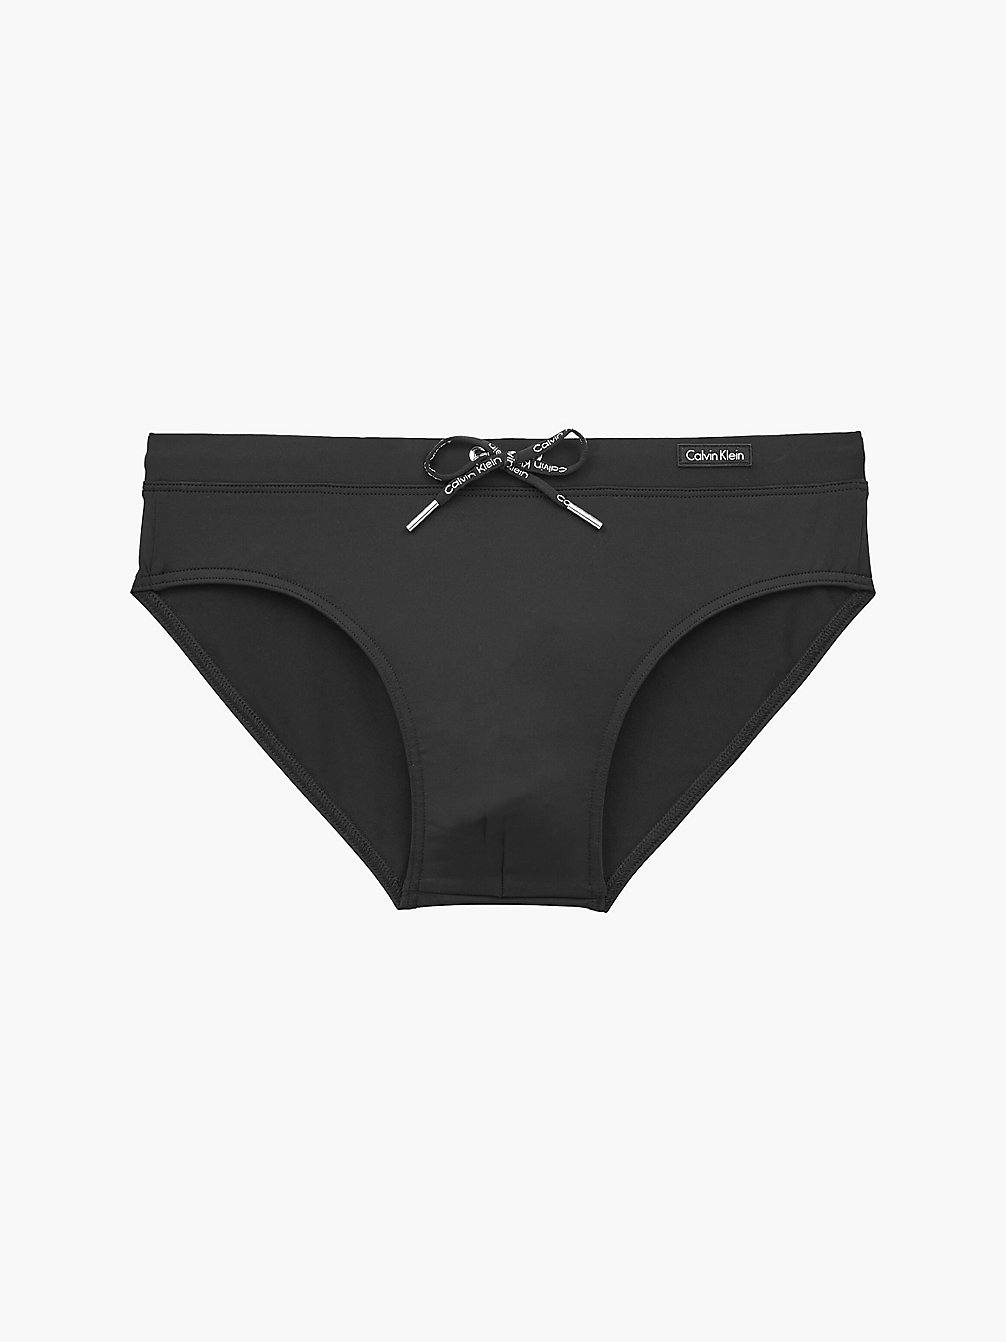 PVH BLACK Swim Brief - Core Solids undefined men Calvin Klein